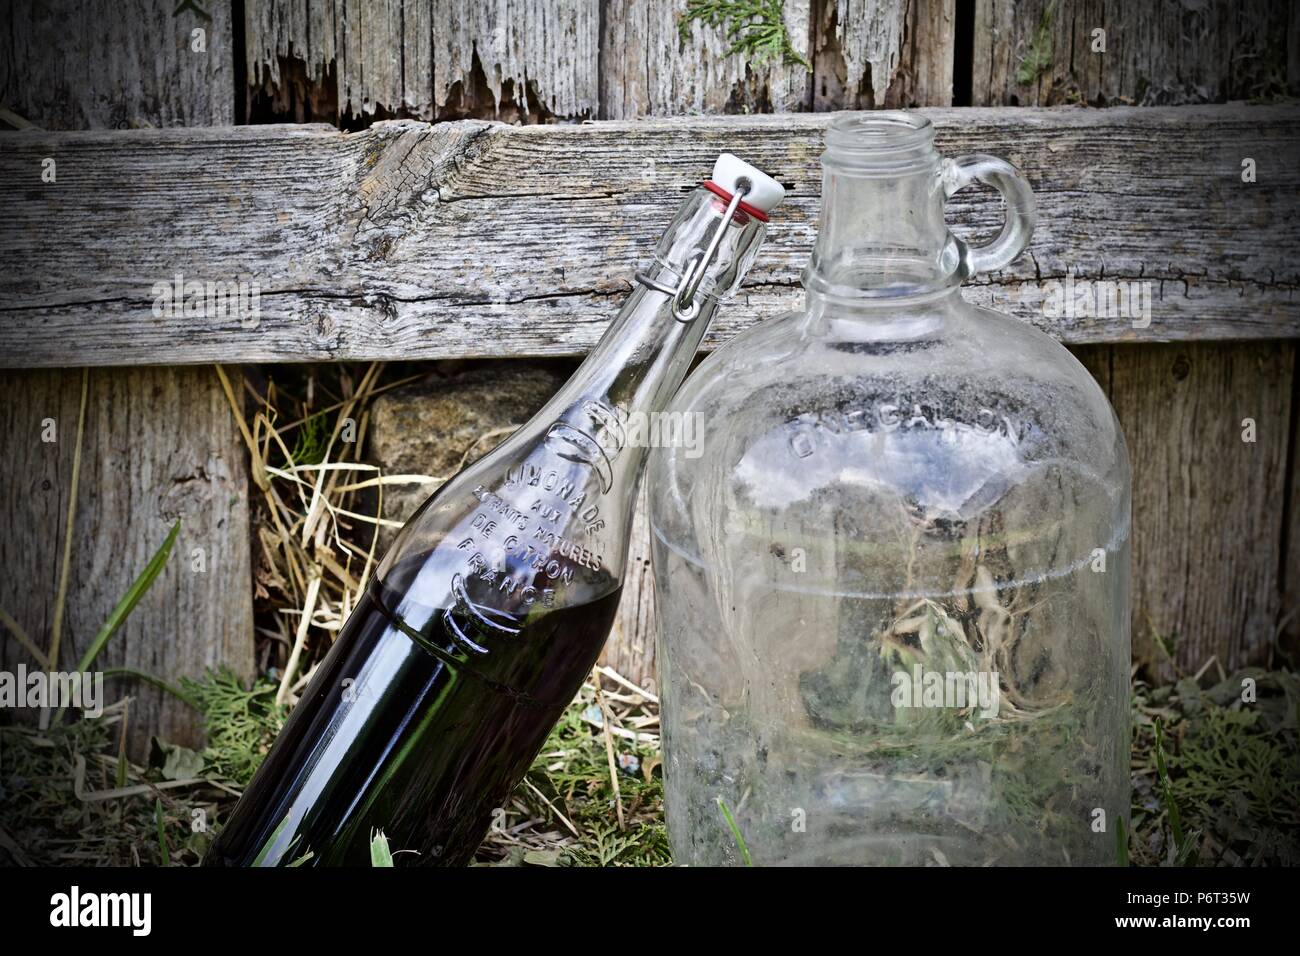 Wine bottles on grass Stock Photo